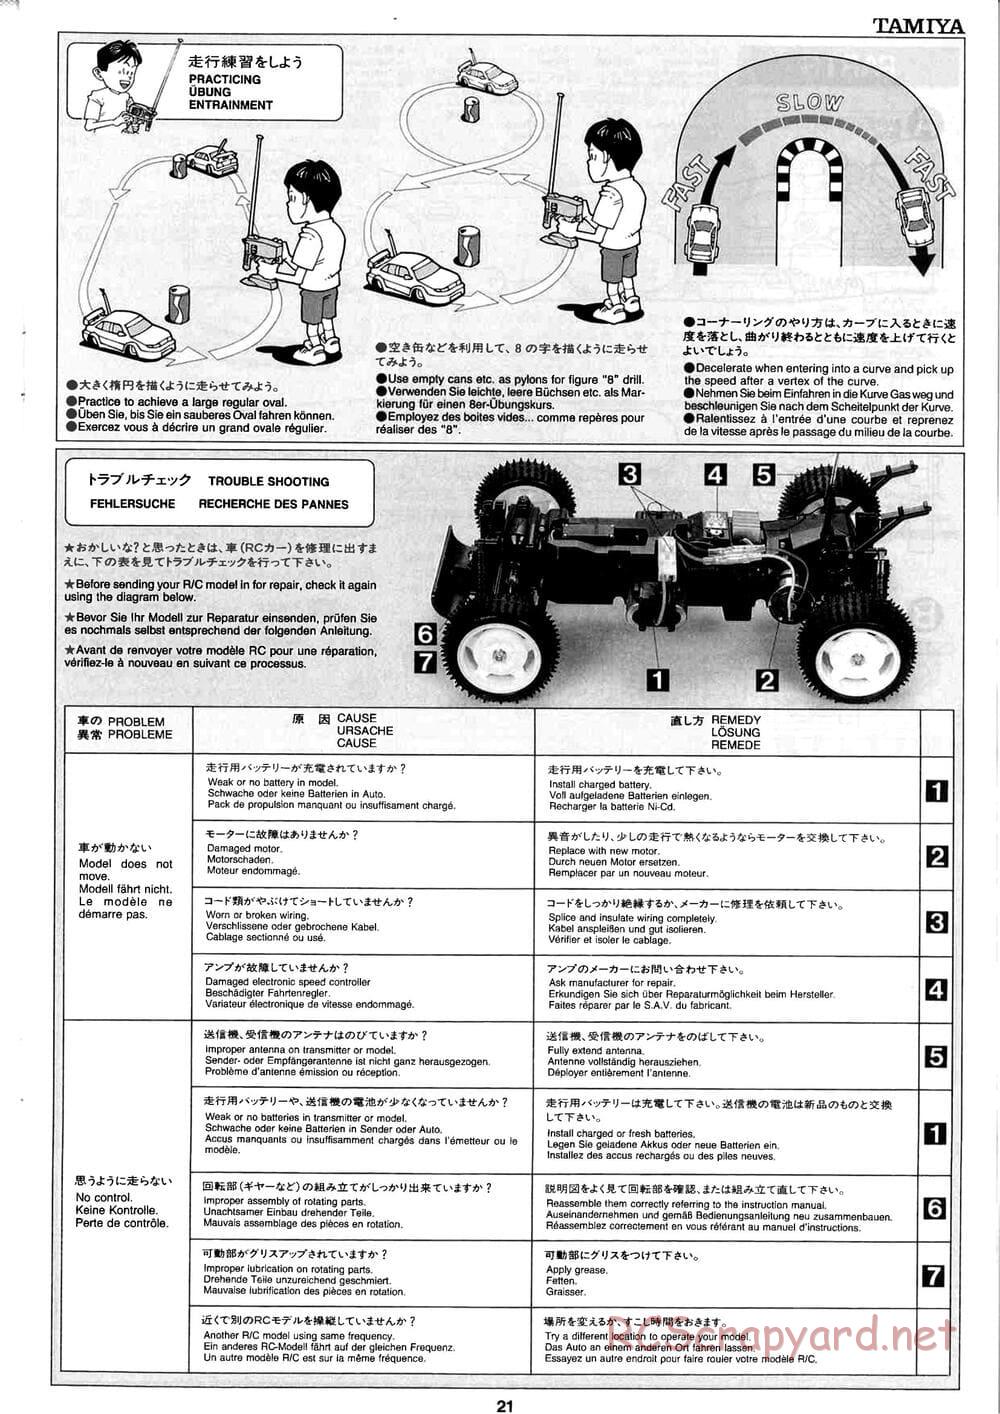 Tamiya - Baja Champ - TL-01B Chassis - Manual - Page 21